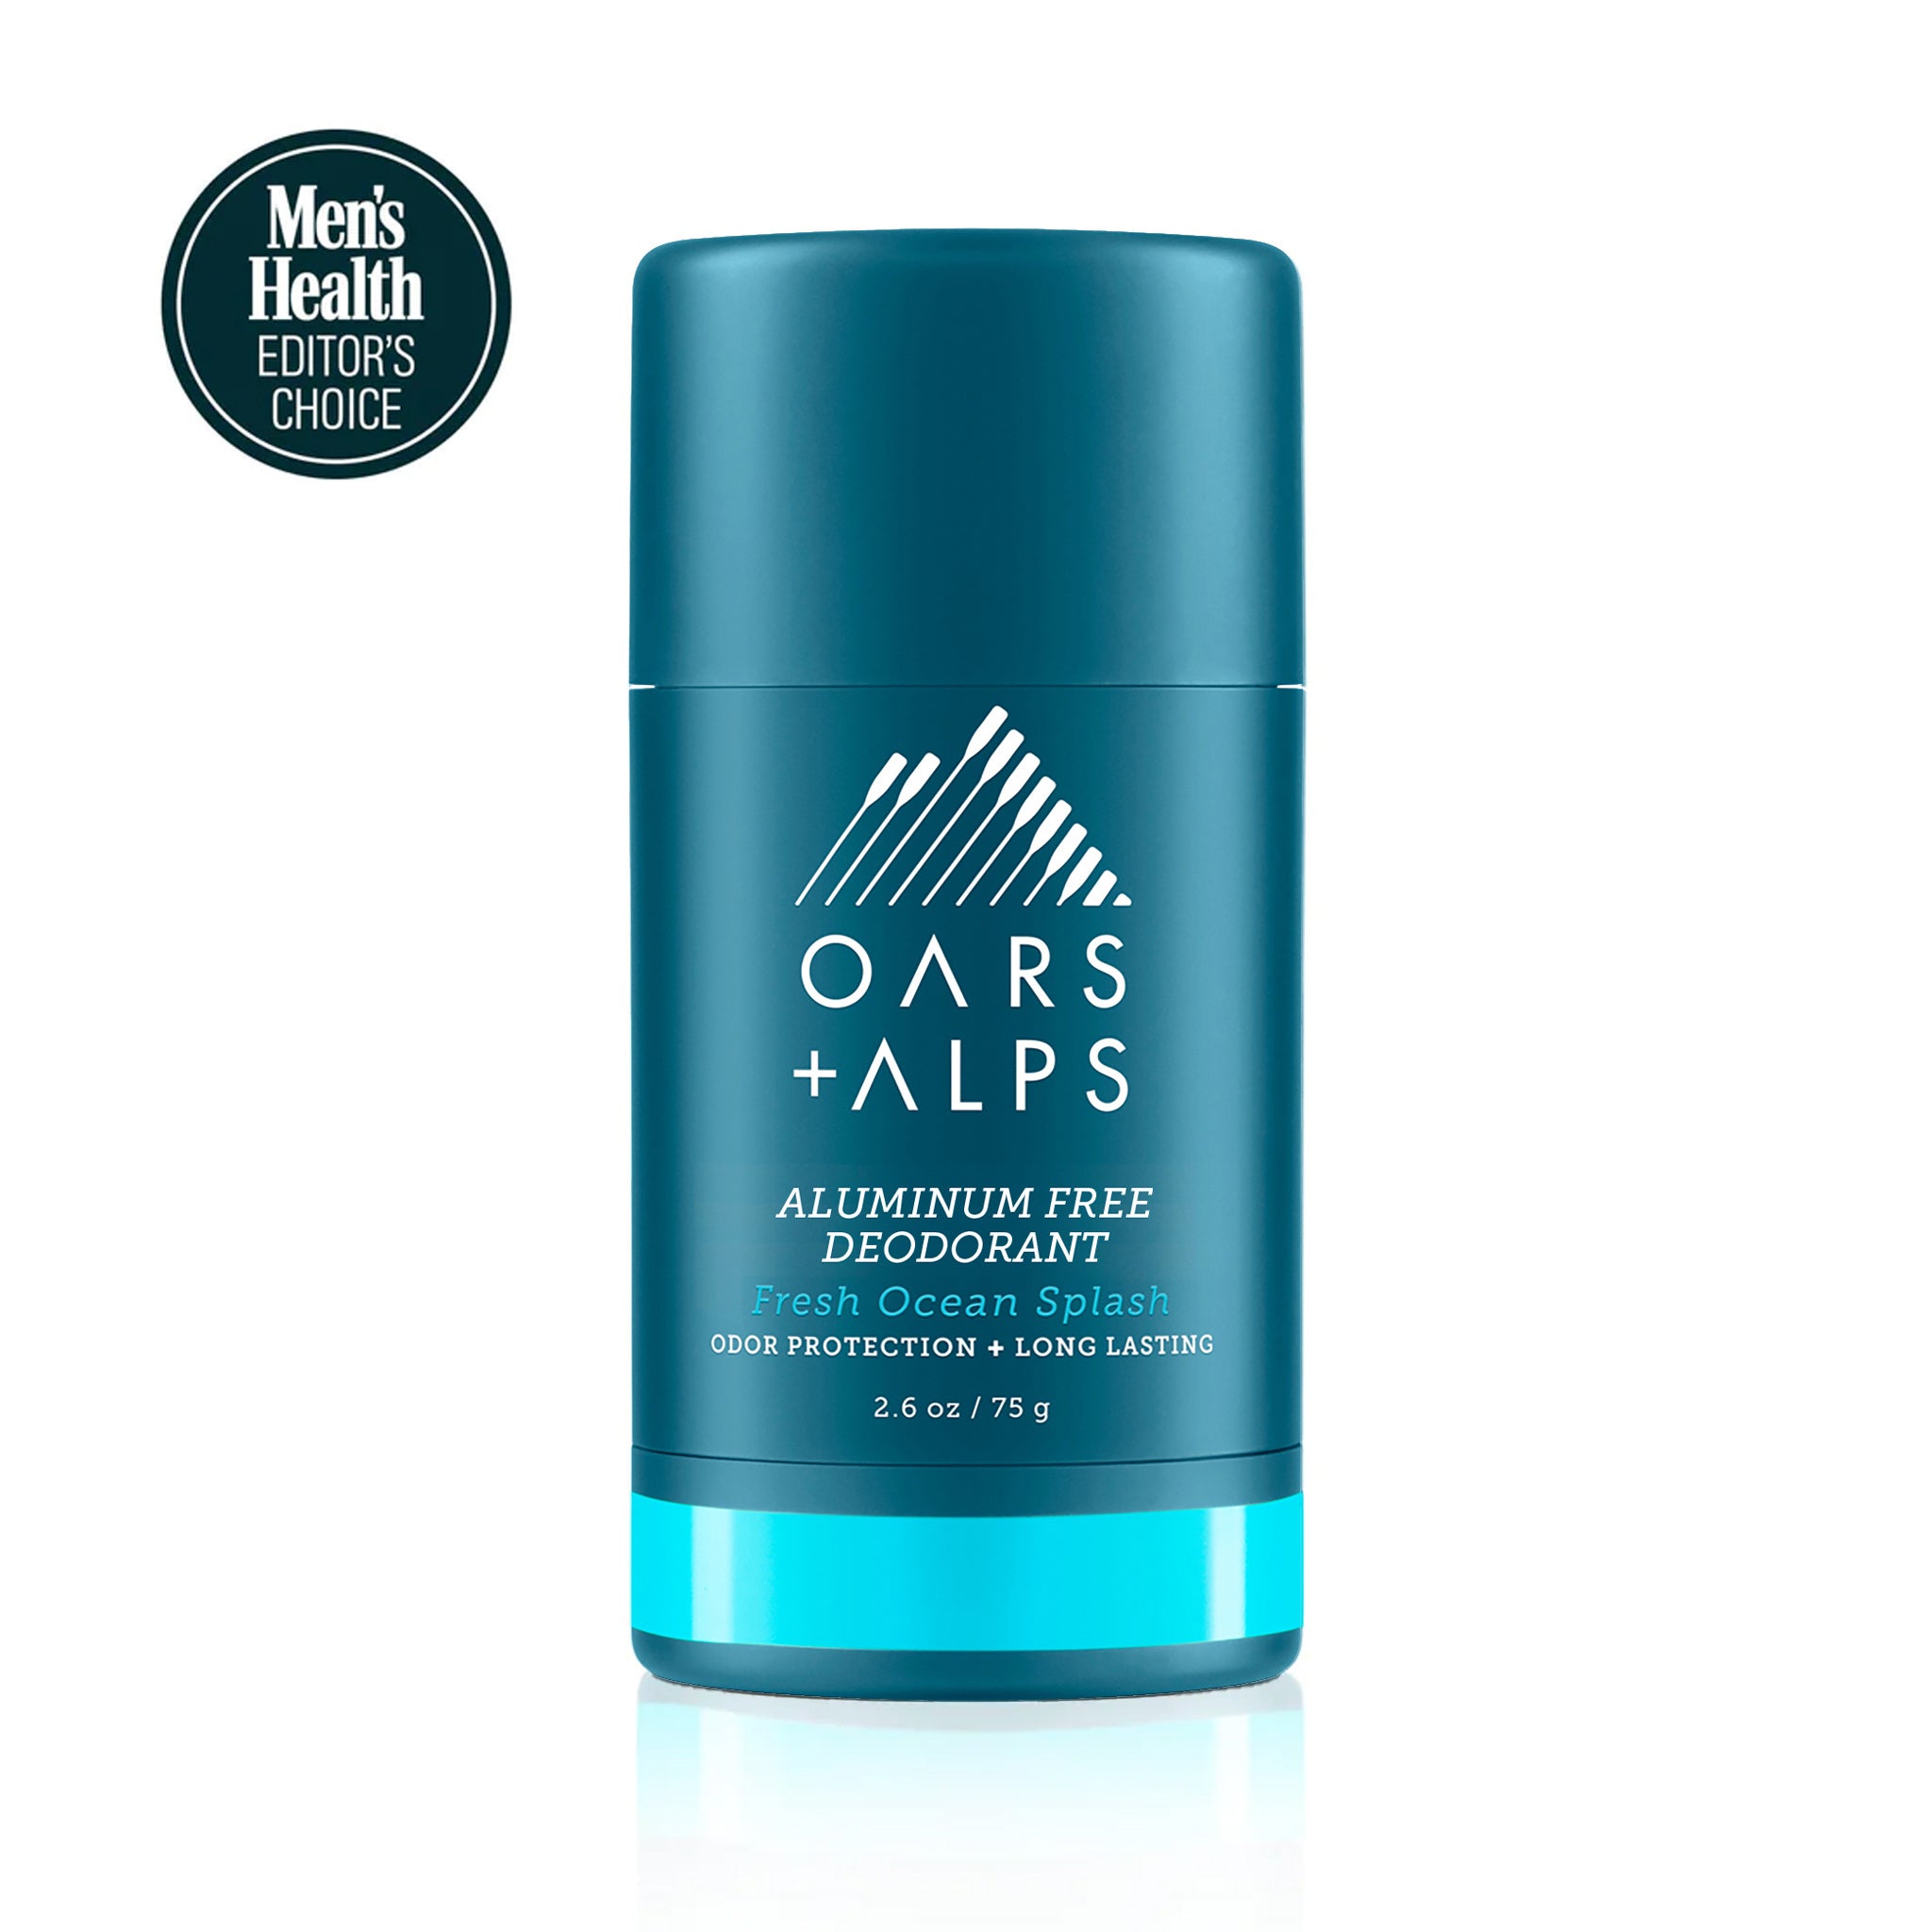 men's aluminum free deodorant - ocean splash scent